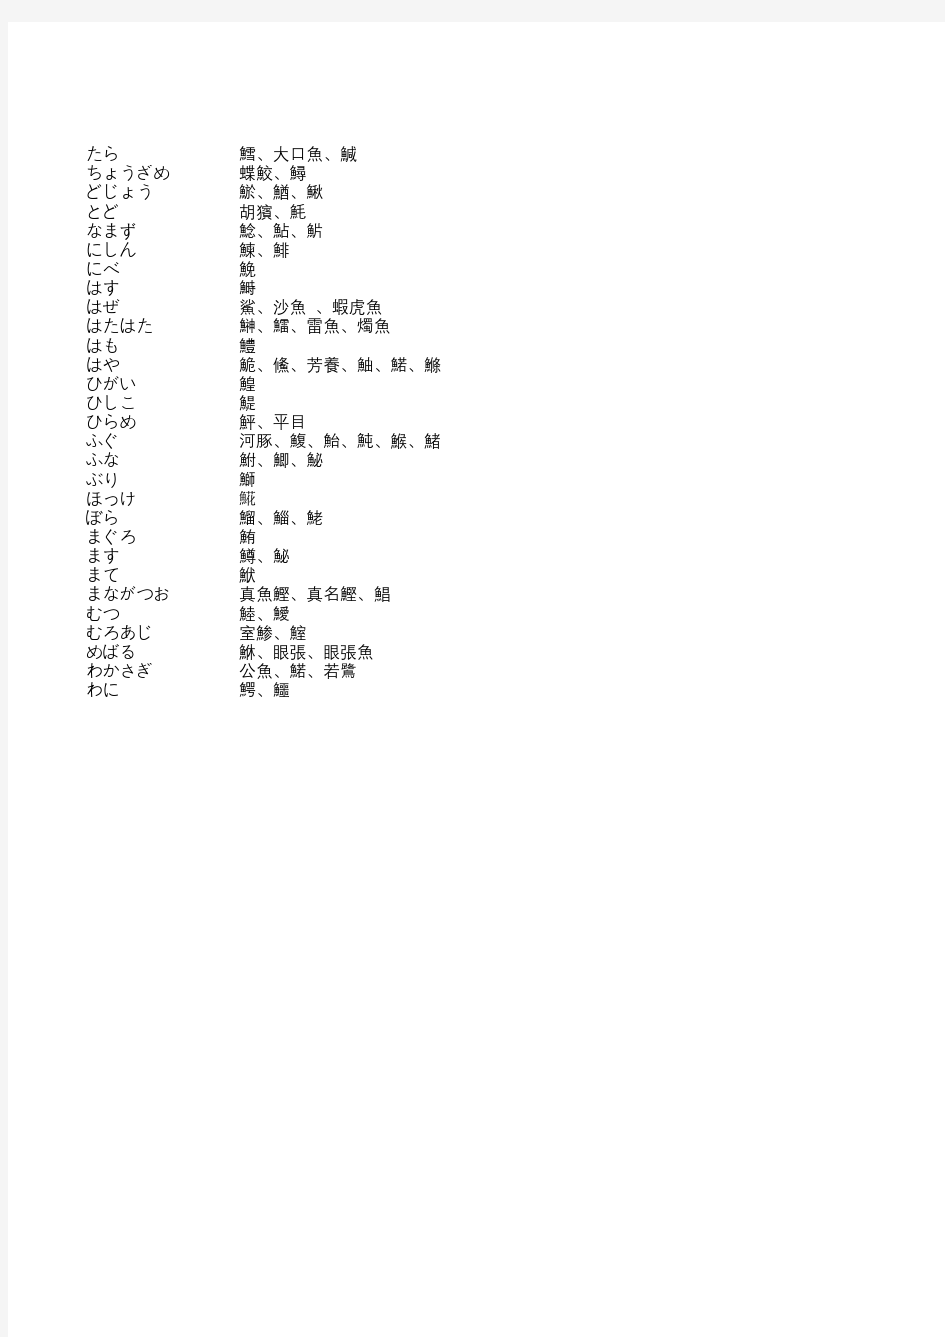 日语单字鱼整理解析